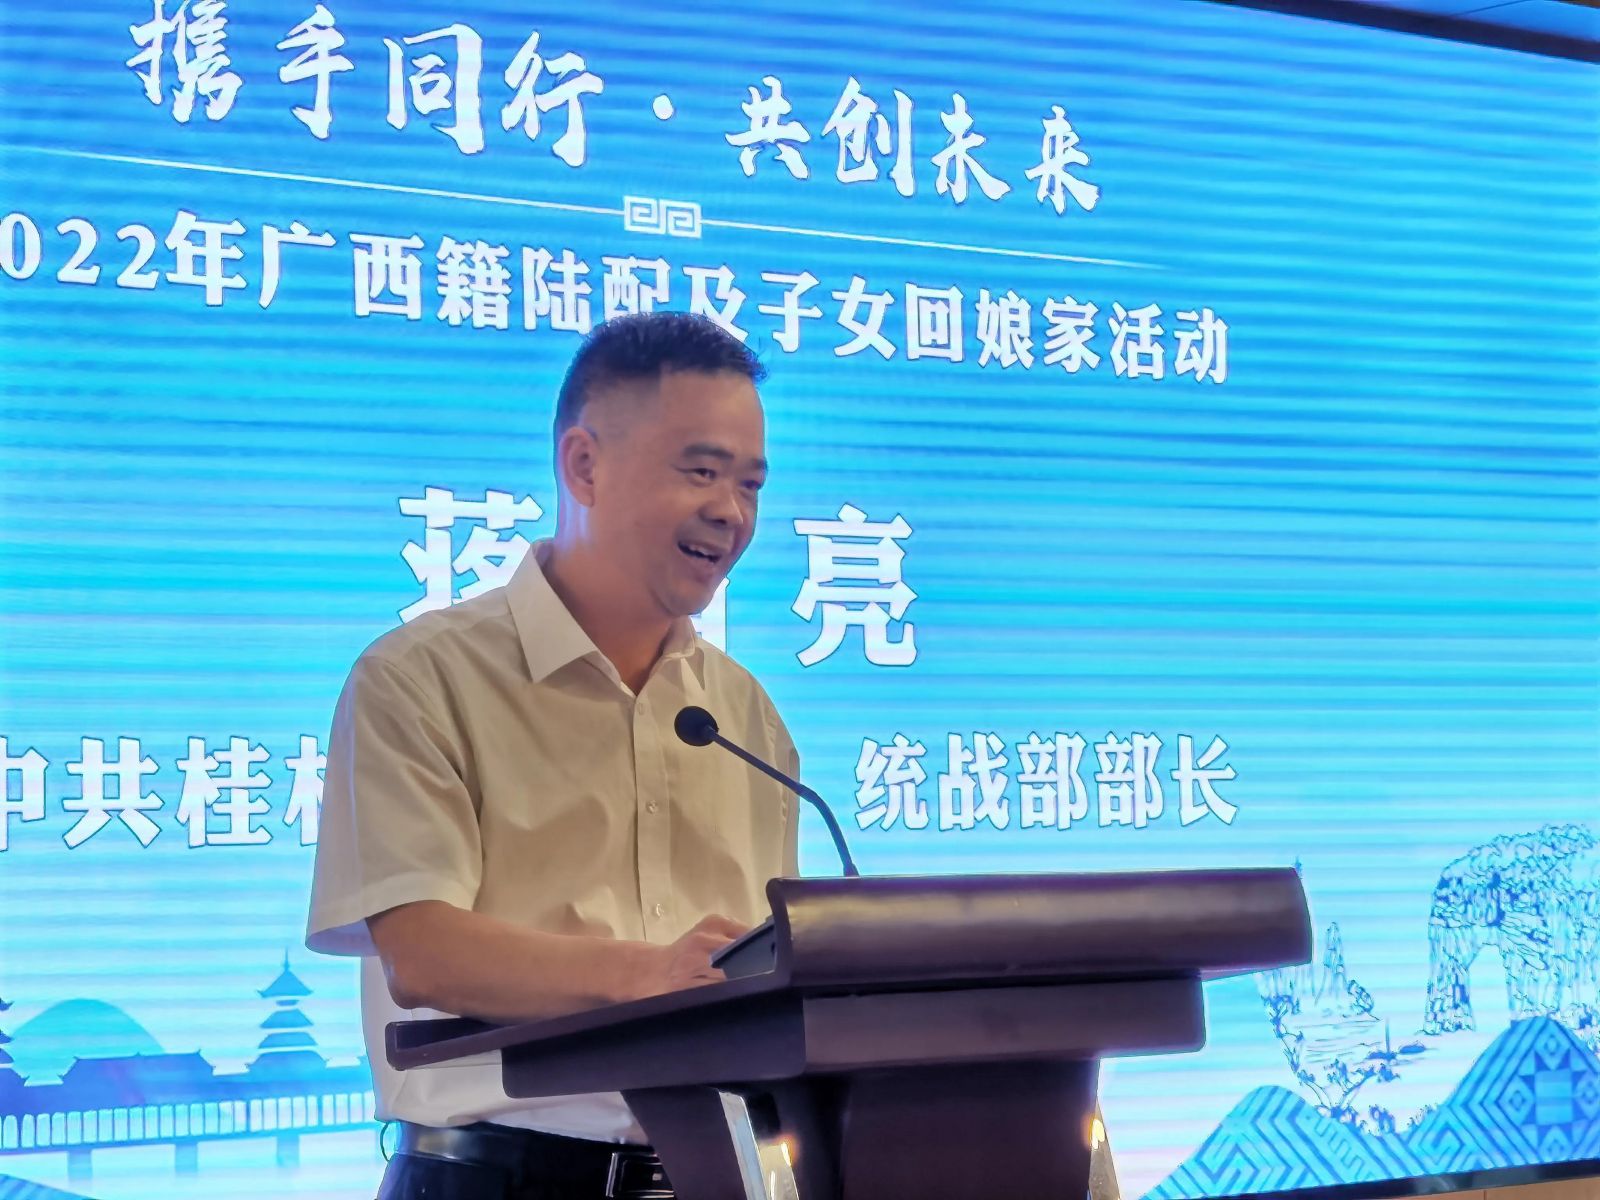 桂林市委常委蔣育亮致辭。